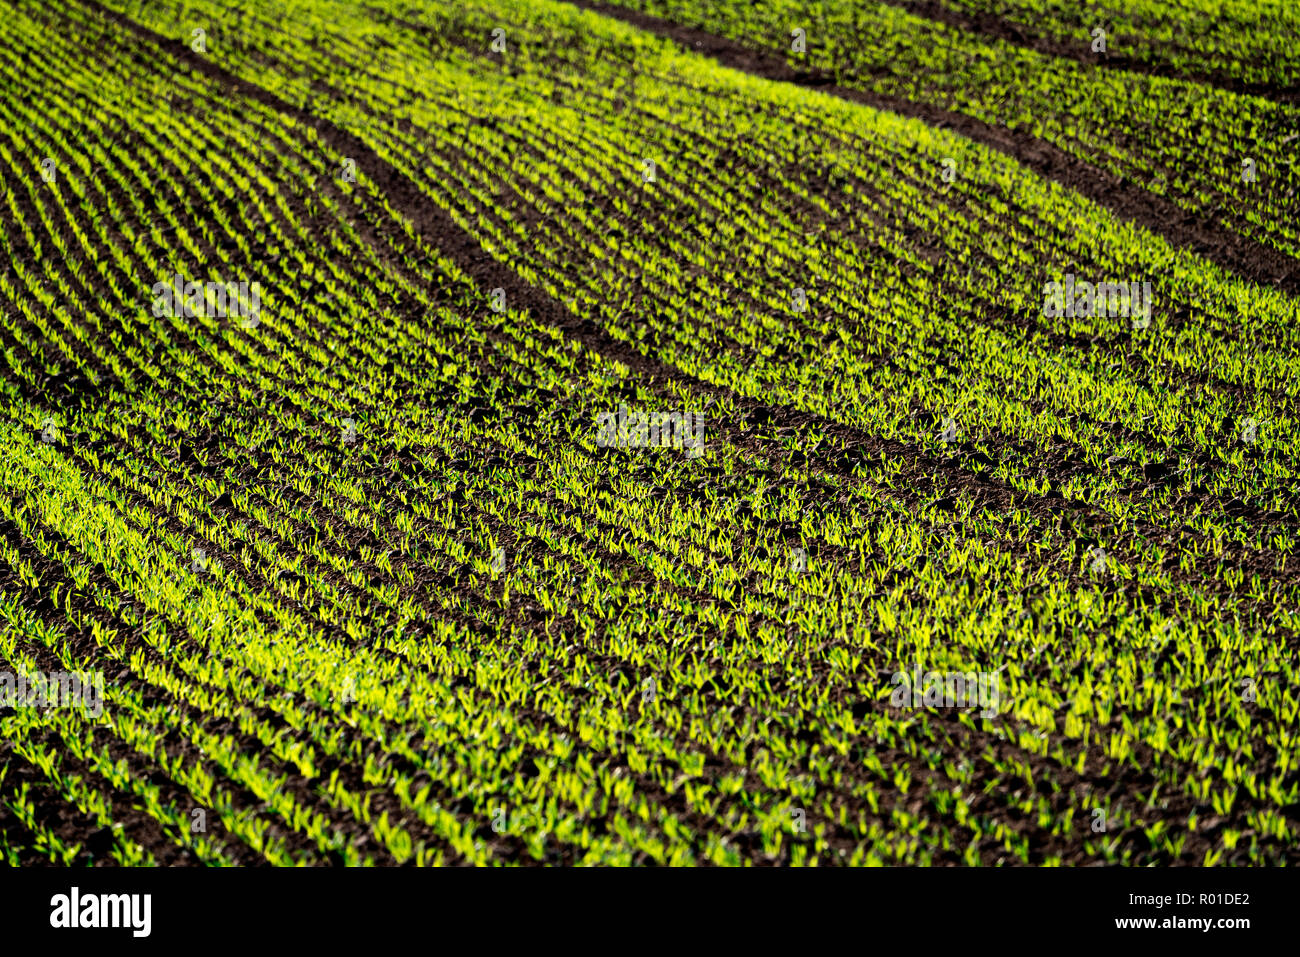 Cool-Saison Getreide im Herbst, Oberweser, Weserbergland, Nordrhein-Westfalen, Hessen, Deutschland Stockfoto